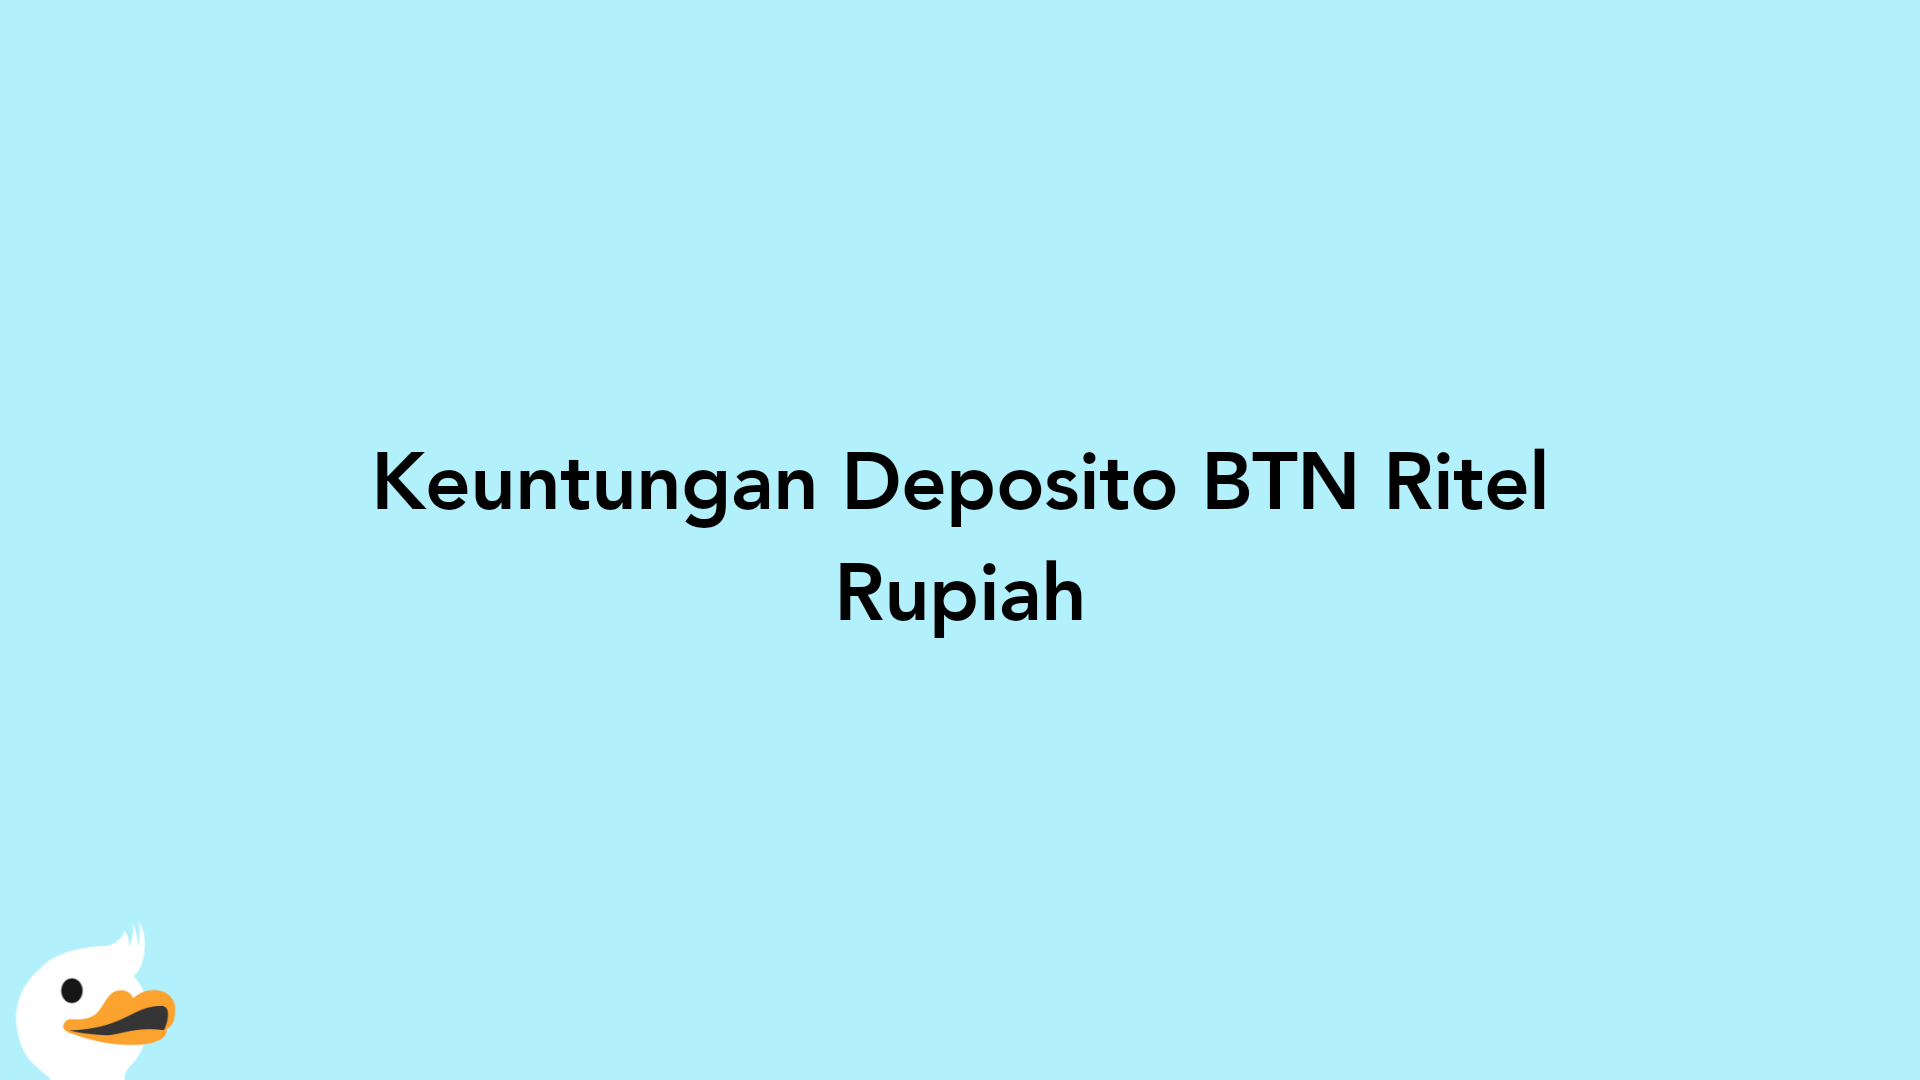 Keuntungan Deposito BTN Ritel Rupiah